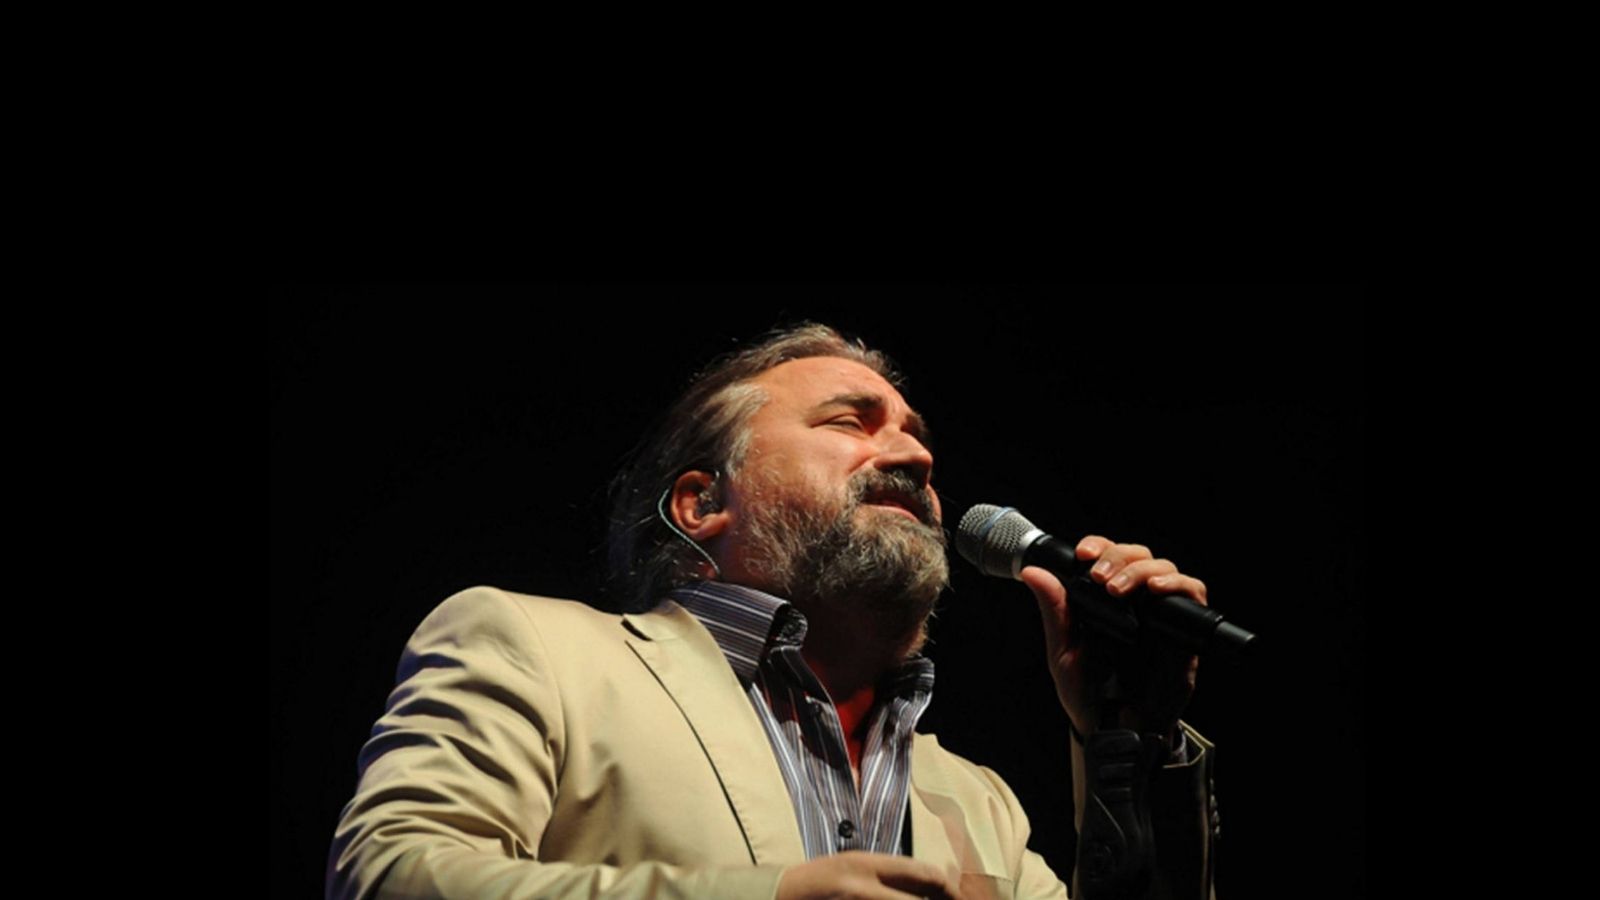 Şarkıcı Volkan Konak'ın; "Beni silin, ben yokum" cümlesiyle yaptığı açıklaması müziği bıraktığı yönünde yorumlamalarda bulunuldu. 